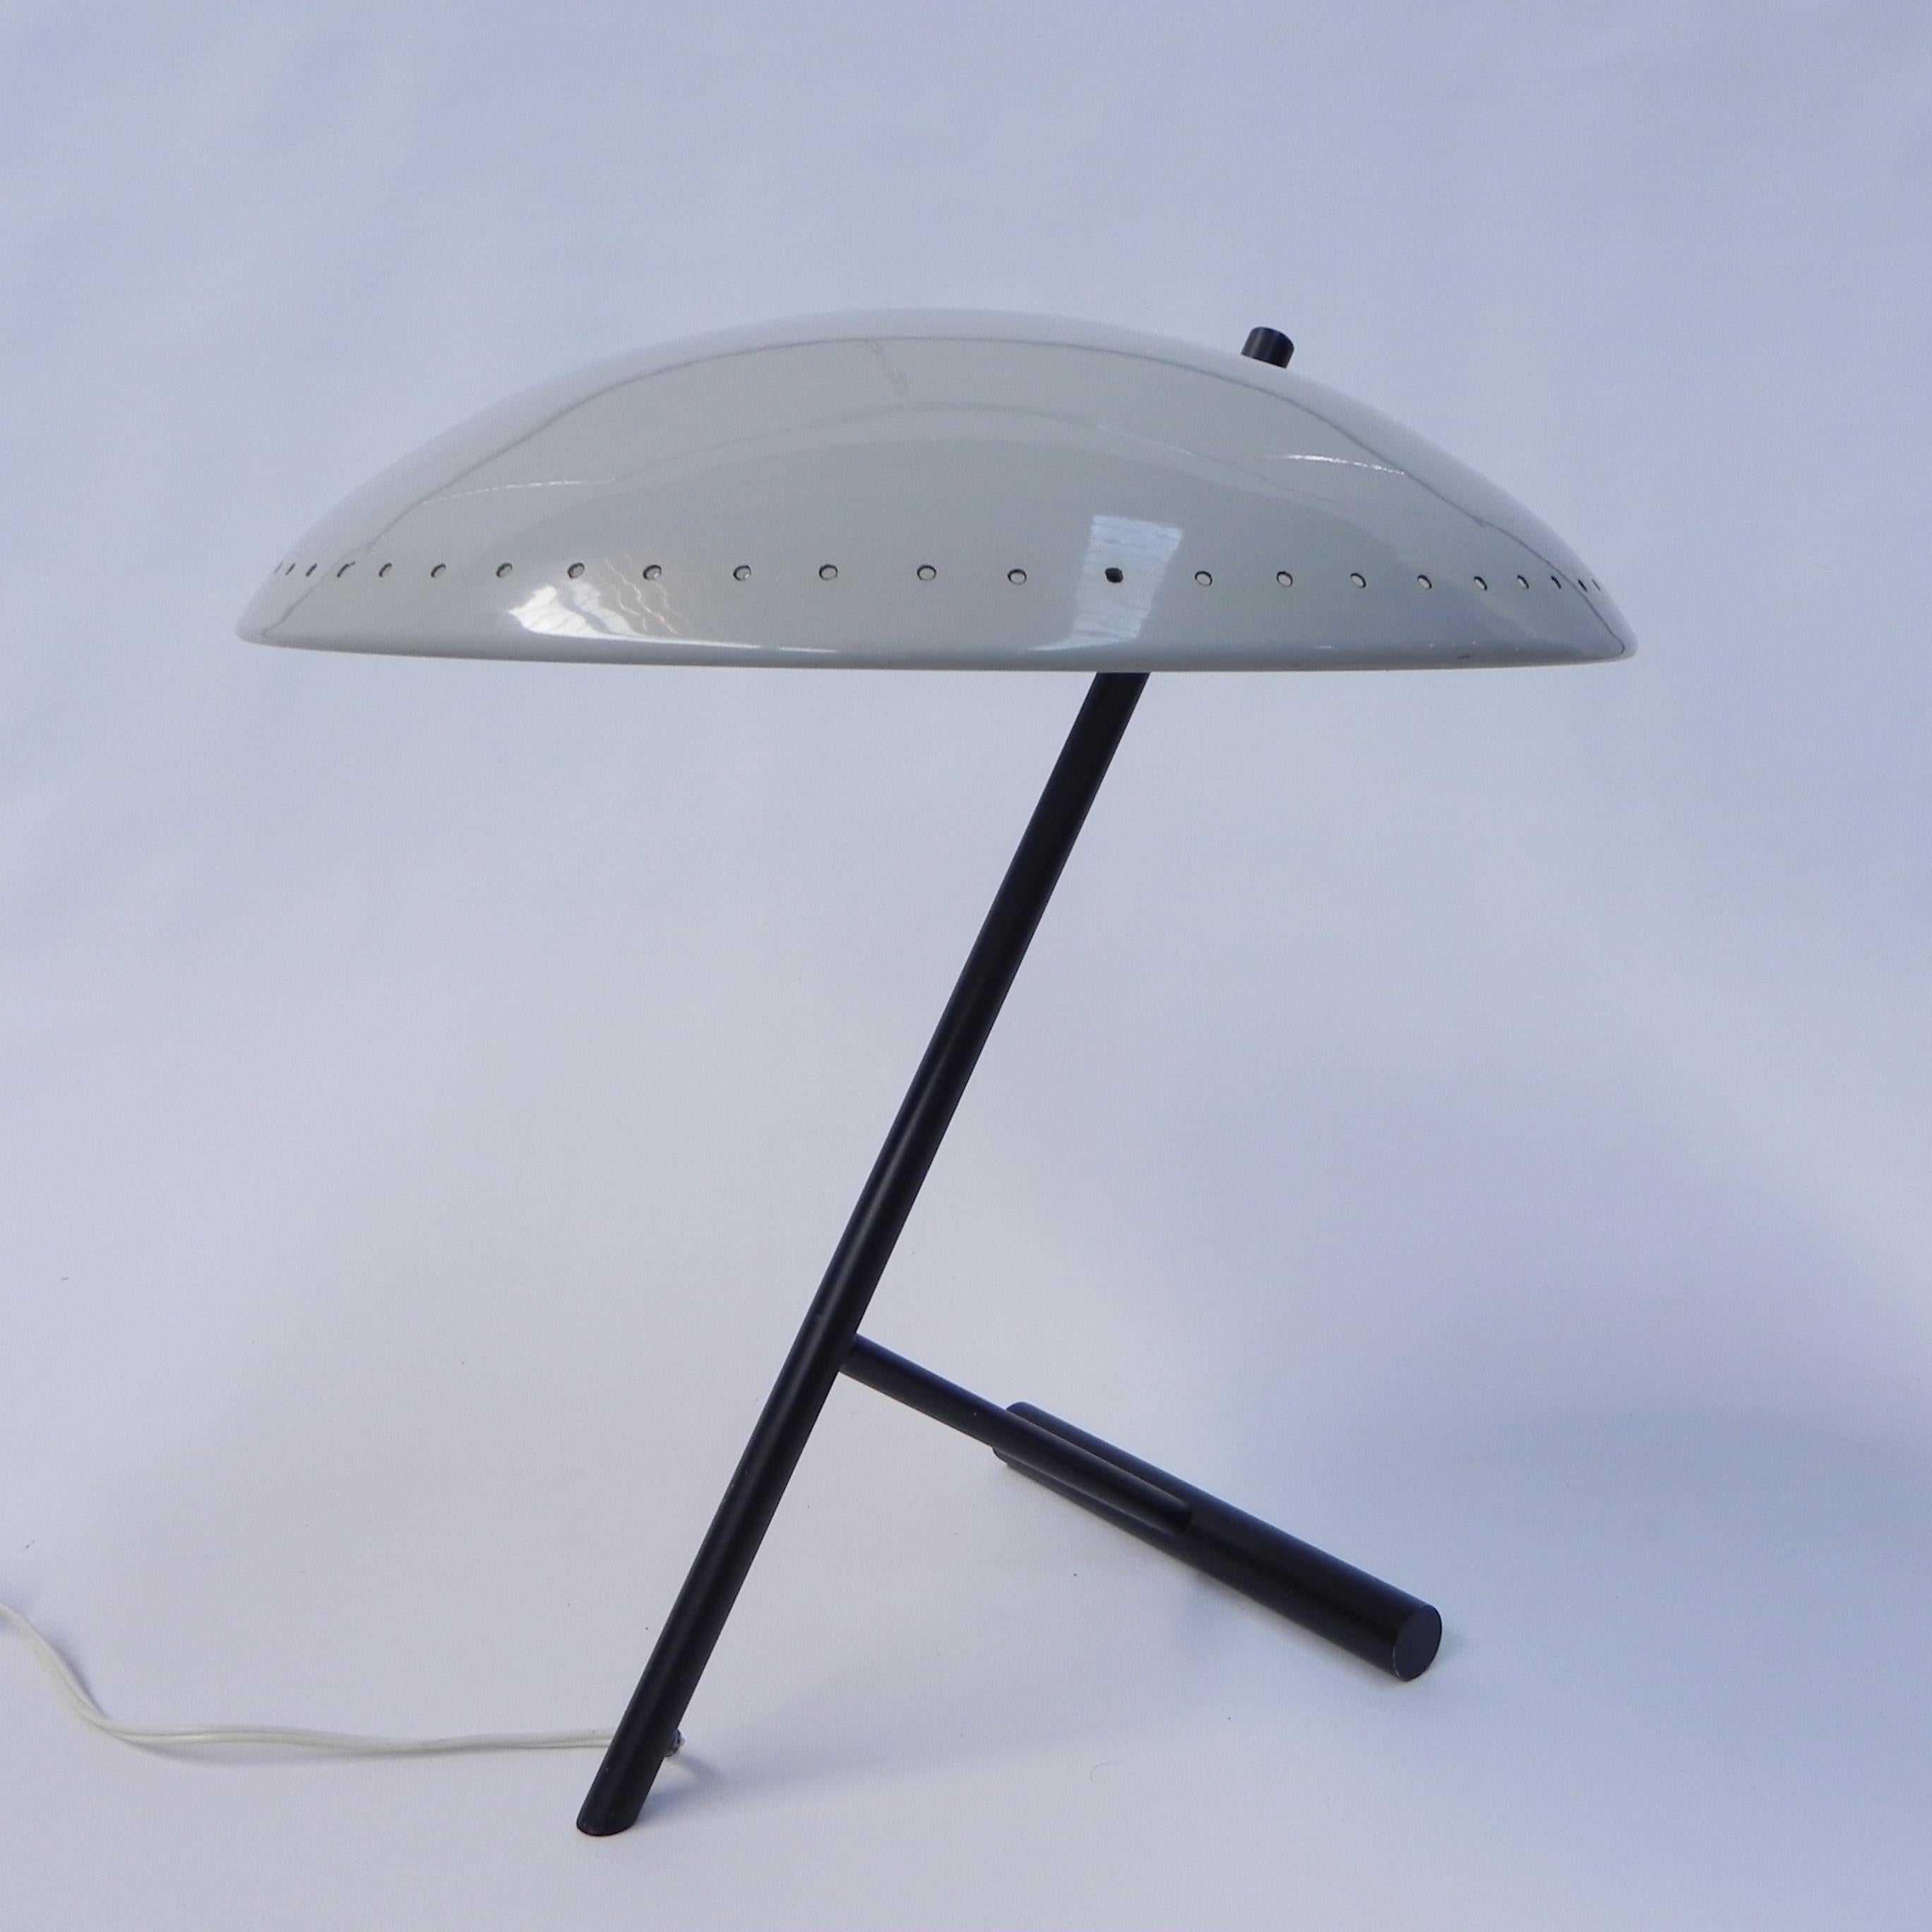 Hauteur : 43 cm.
Ø : 39 cm.
La lampe est équipée d'une grande douille (E27).
Origine : Pays-Bas, années 1960.
Matériau : aluminium (abat-jour) / laiton (peint en noir).
Toutes nos lampes sont adaptées aux lampes LED.